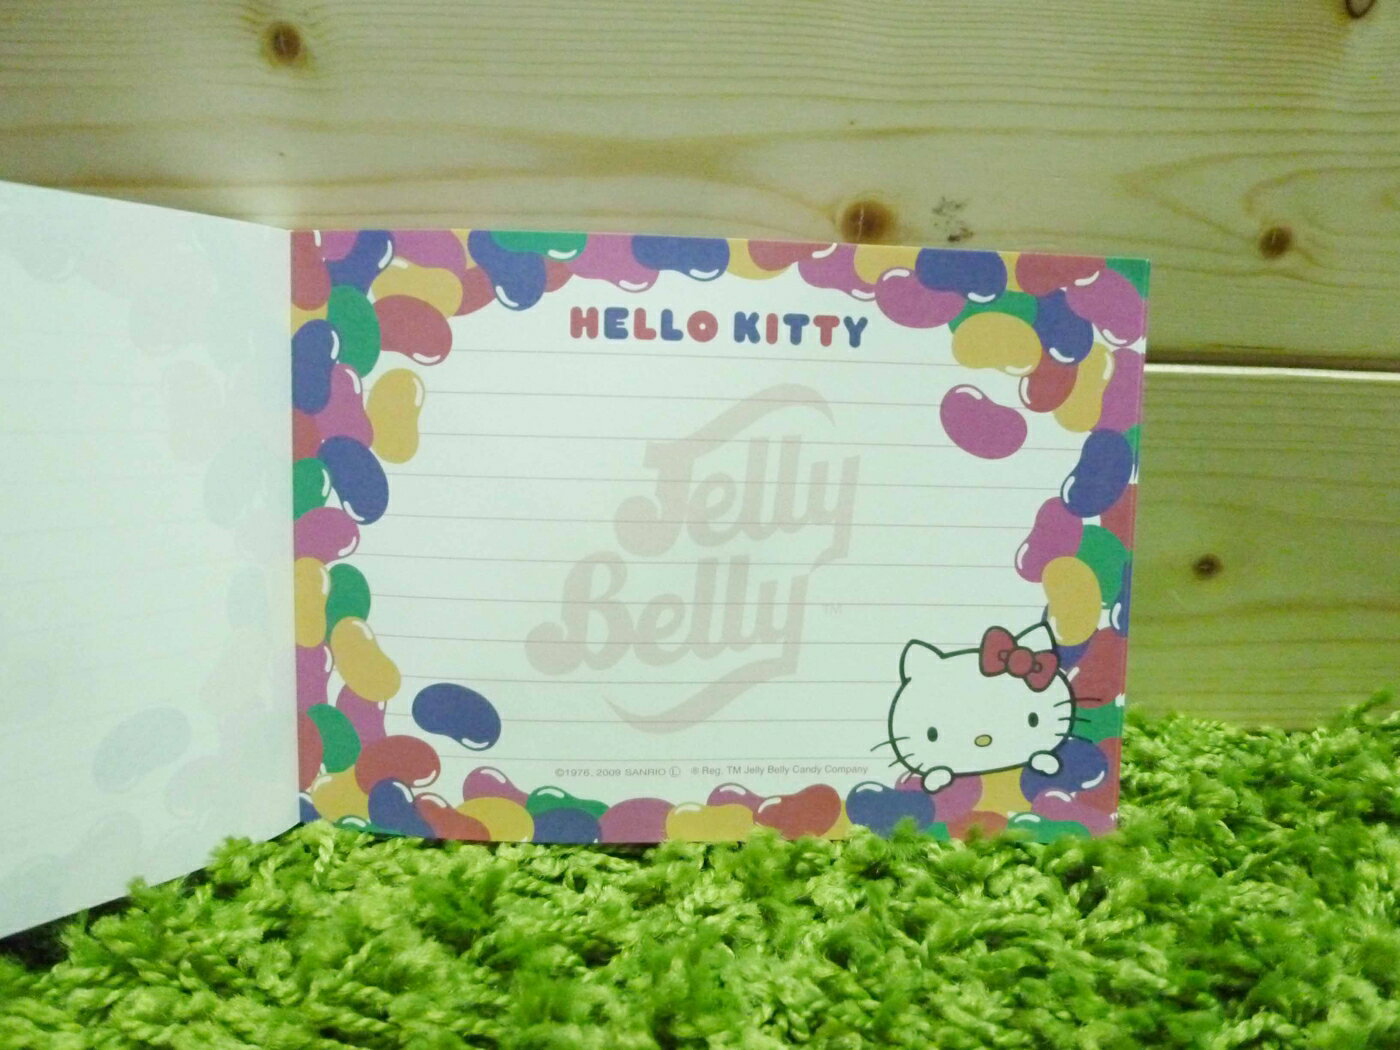 【震撼精品百貨】Hello Kitty 凱蒂貓 造型便條紙-糖果圖案【共1款】 震撼日式精品百貨